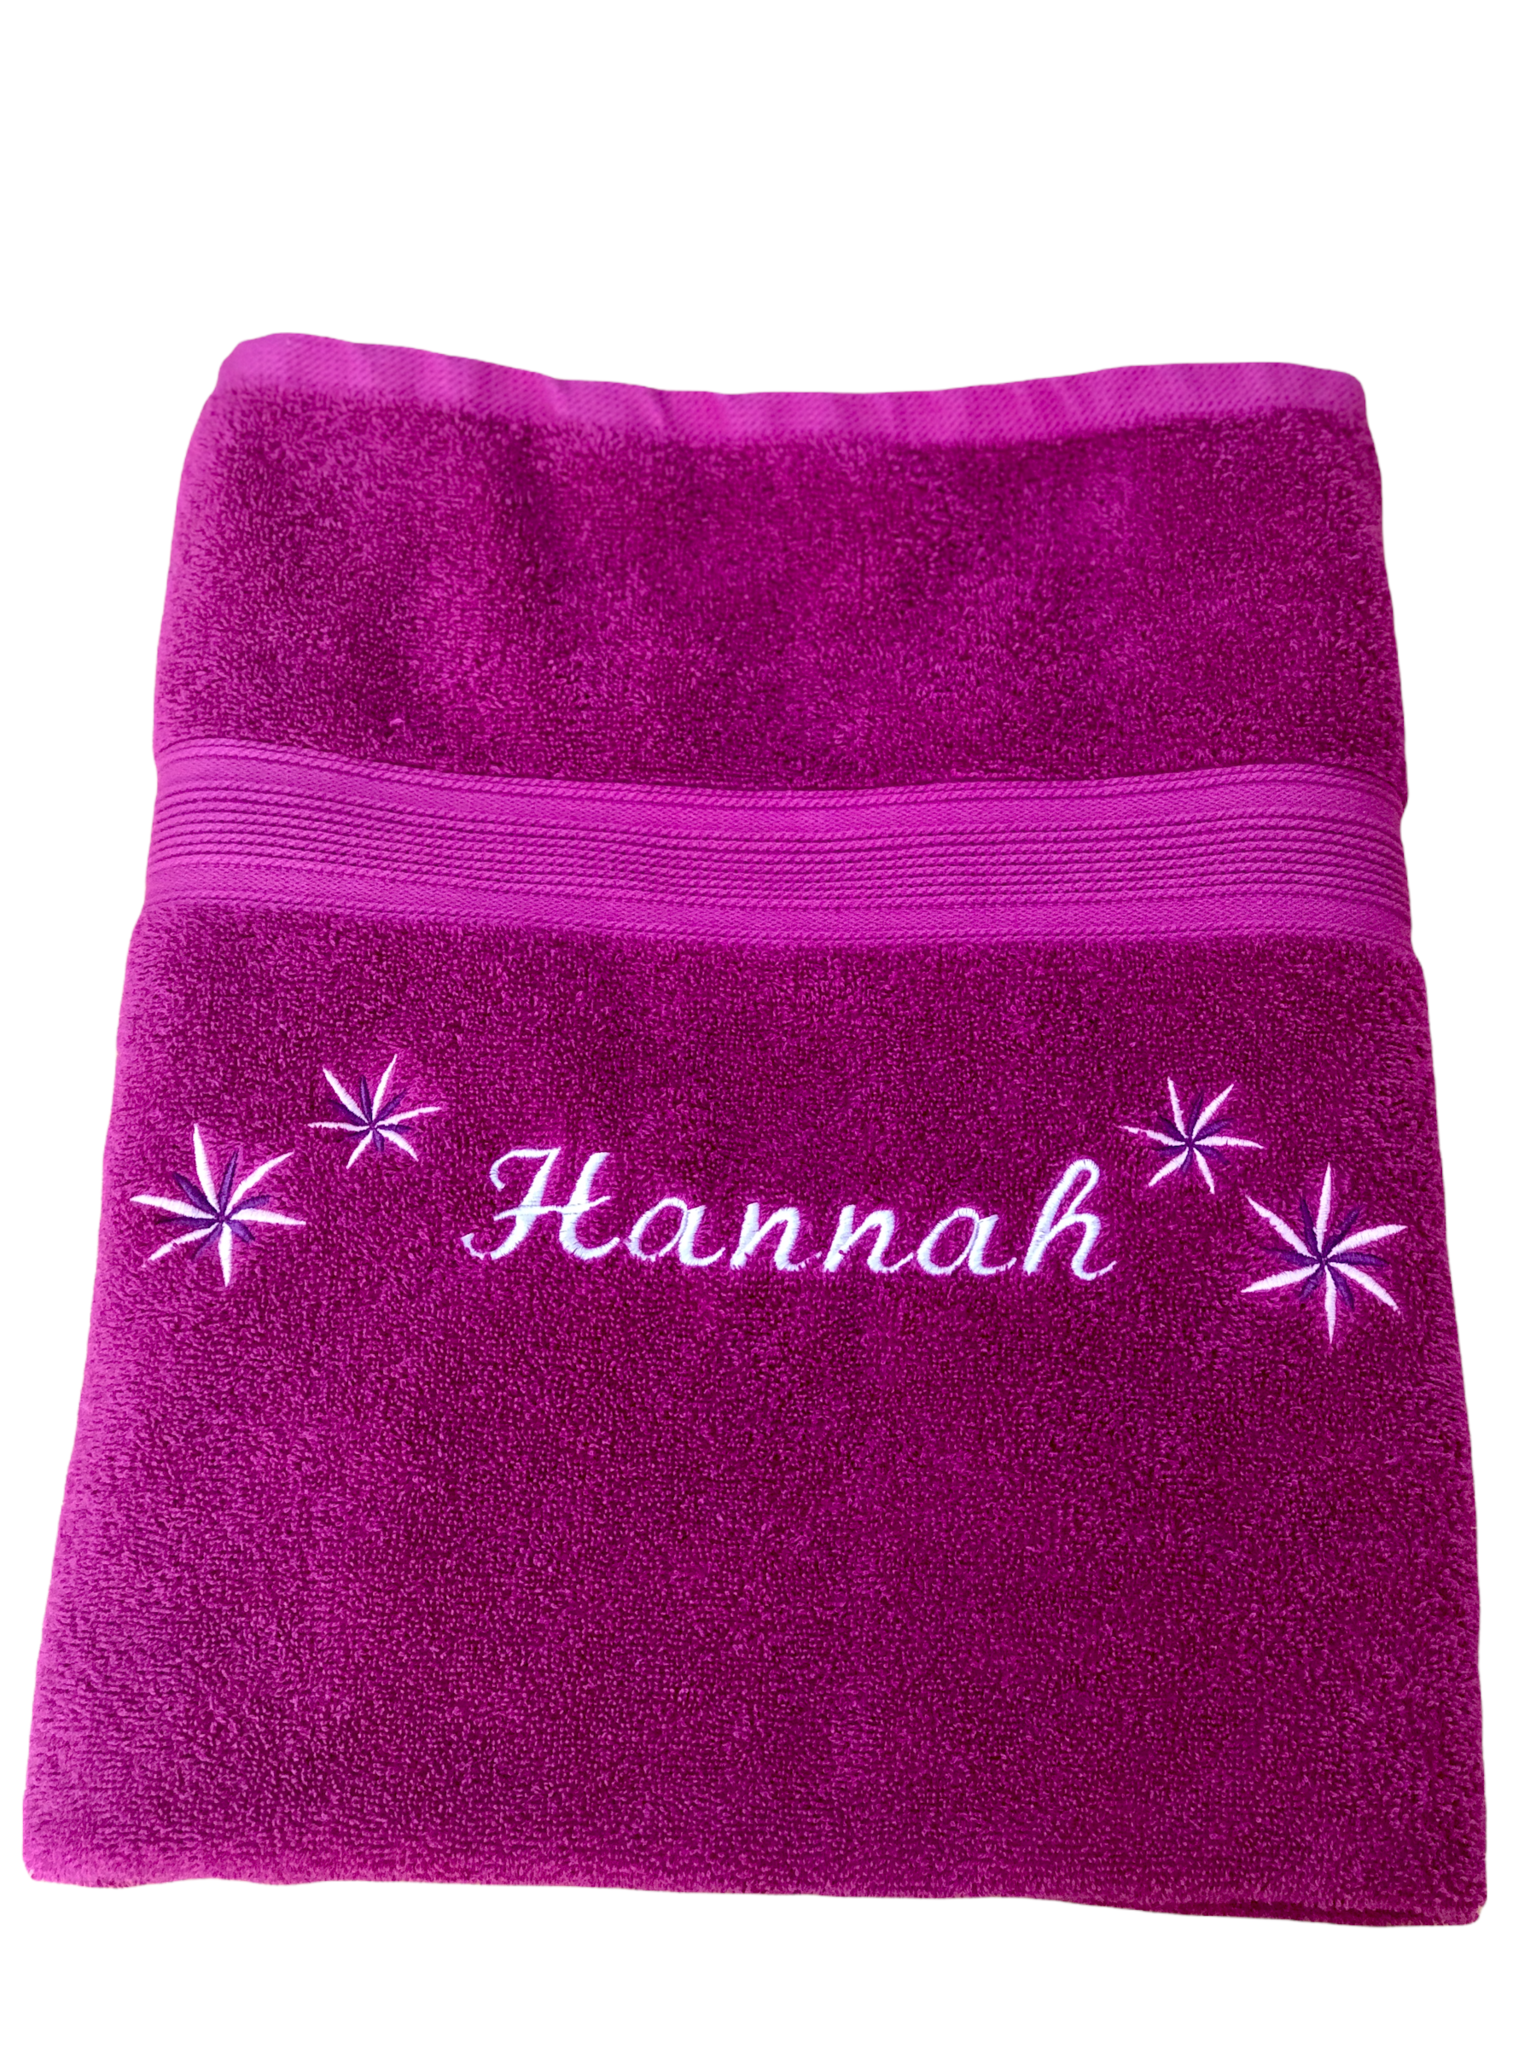 Duschtuch Handtuch Handtuch bestickt mit Namen und 4 Blumen Saunatuch 